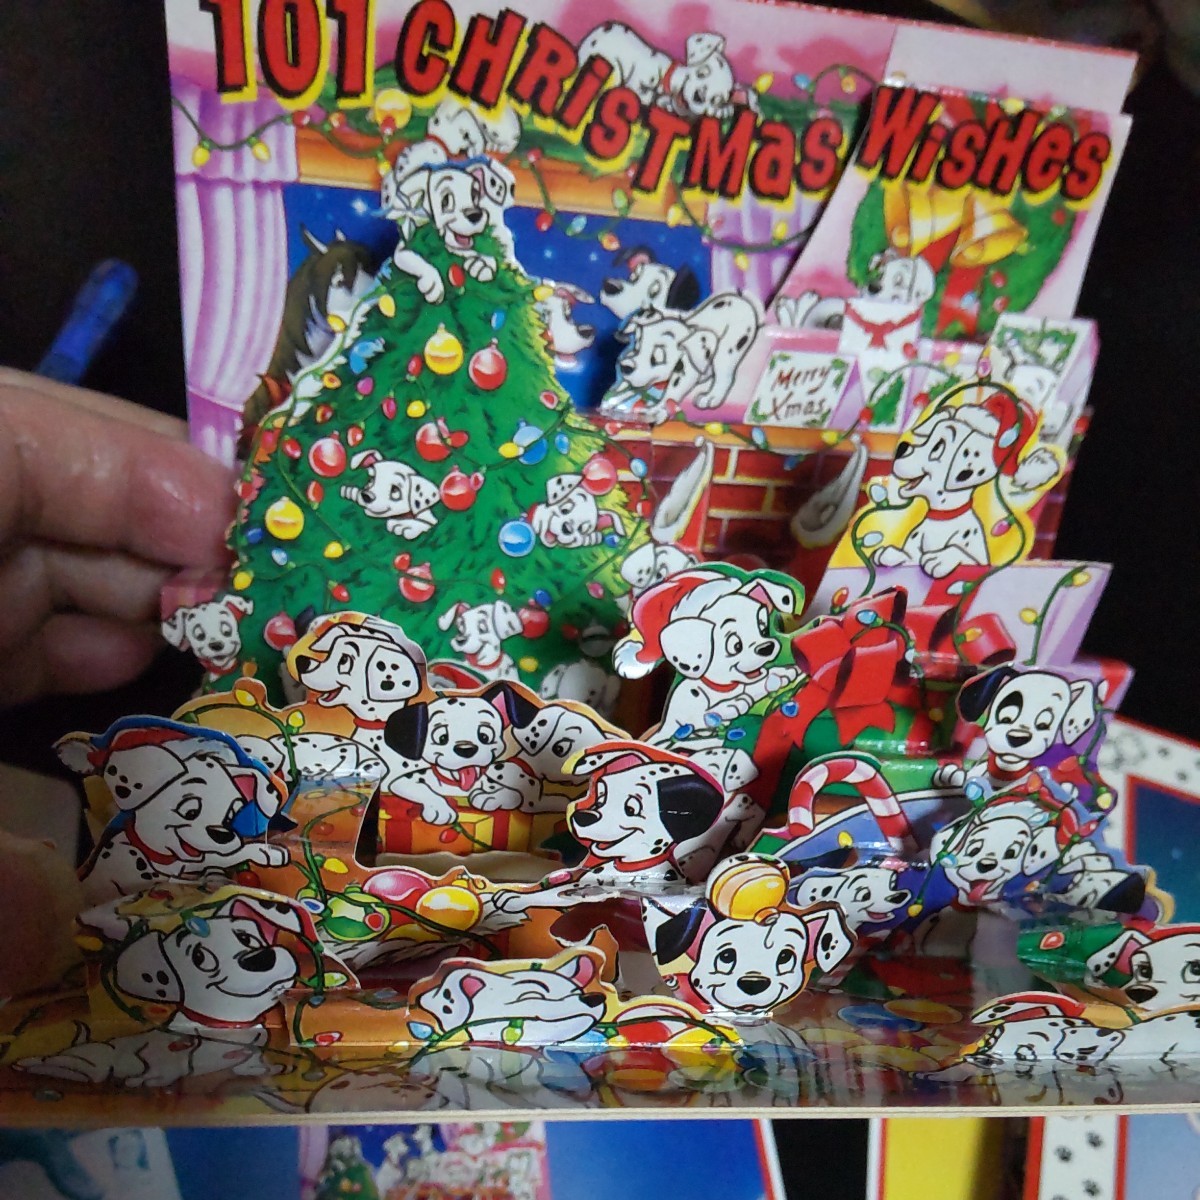 2311 迪士尼 POP SHOTS 101 斑点狗 3D 立体圣诞贺卡和克鲁拉生日贺卡, 印刷材料, 明信片, 明信片, 其他的